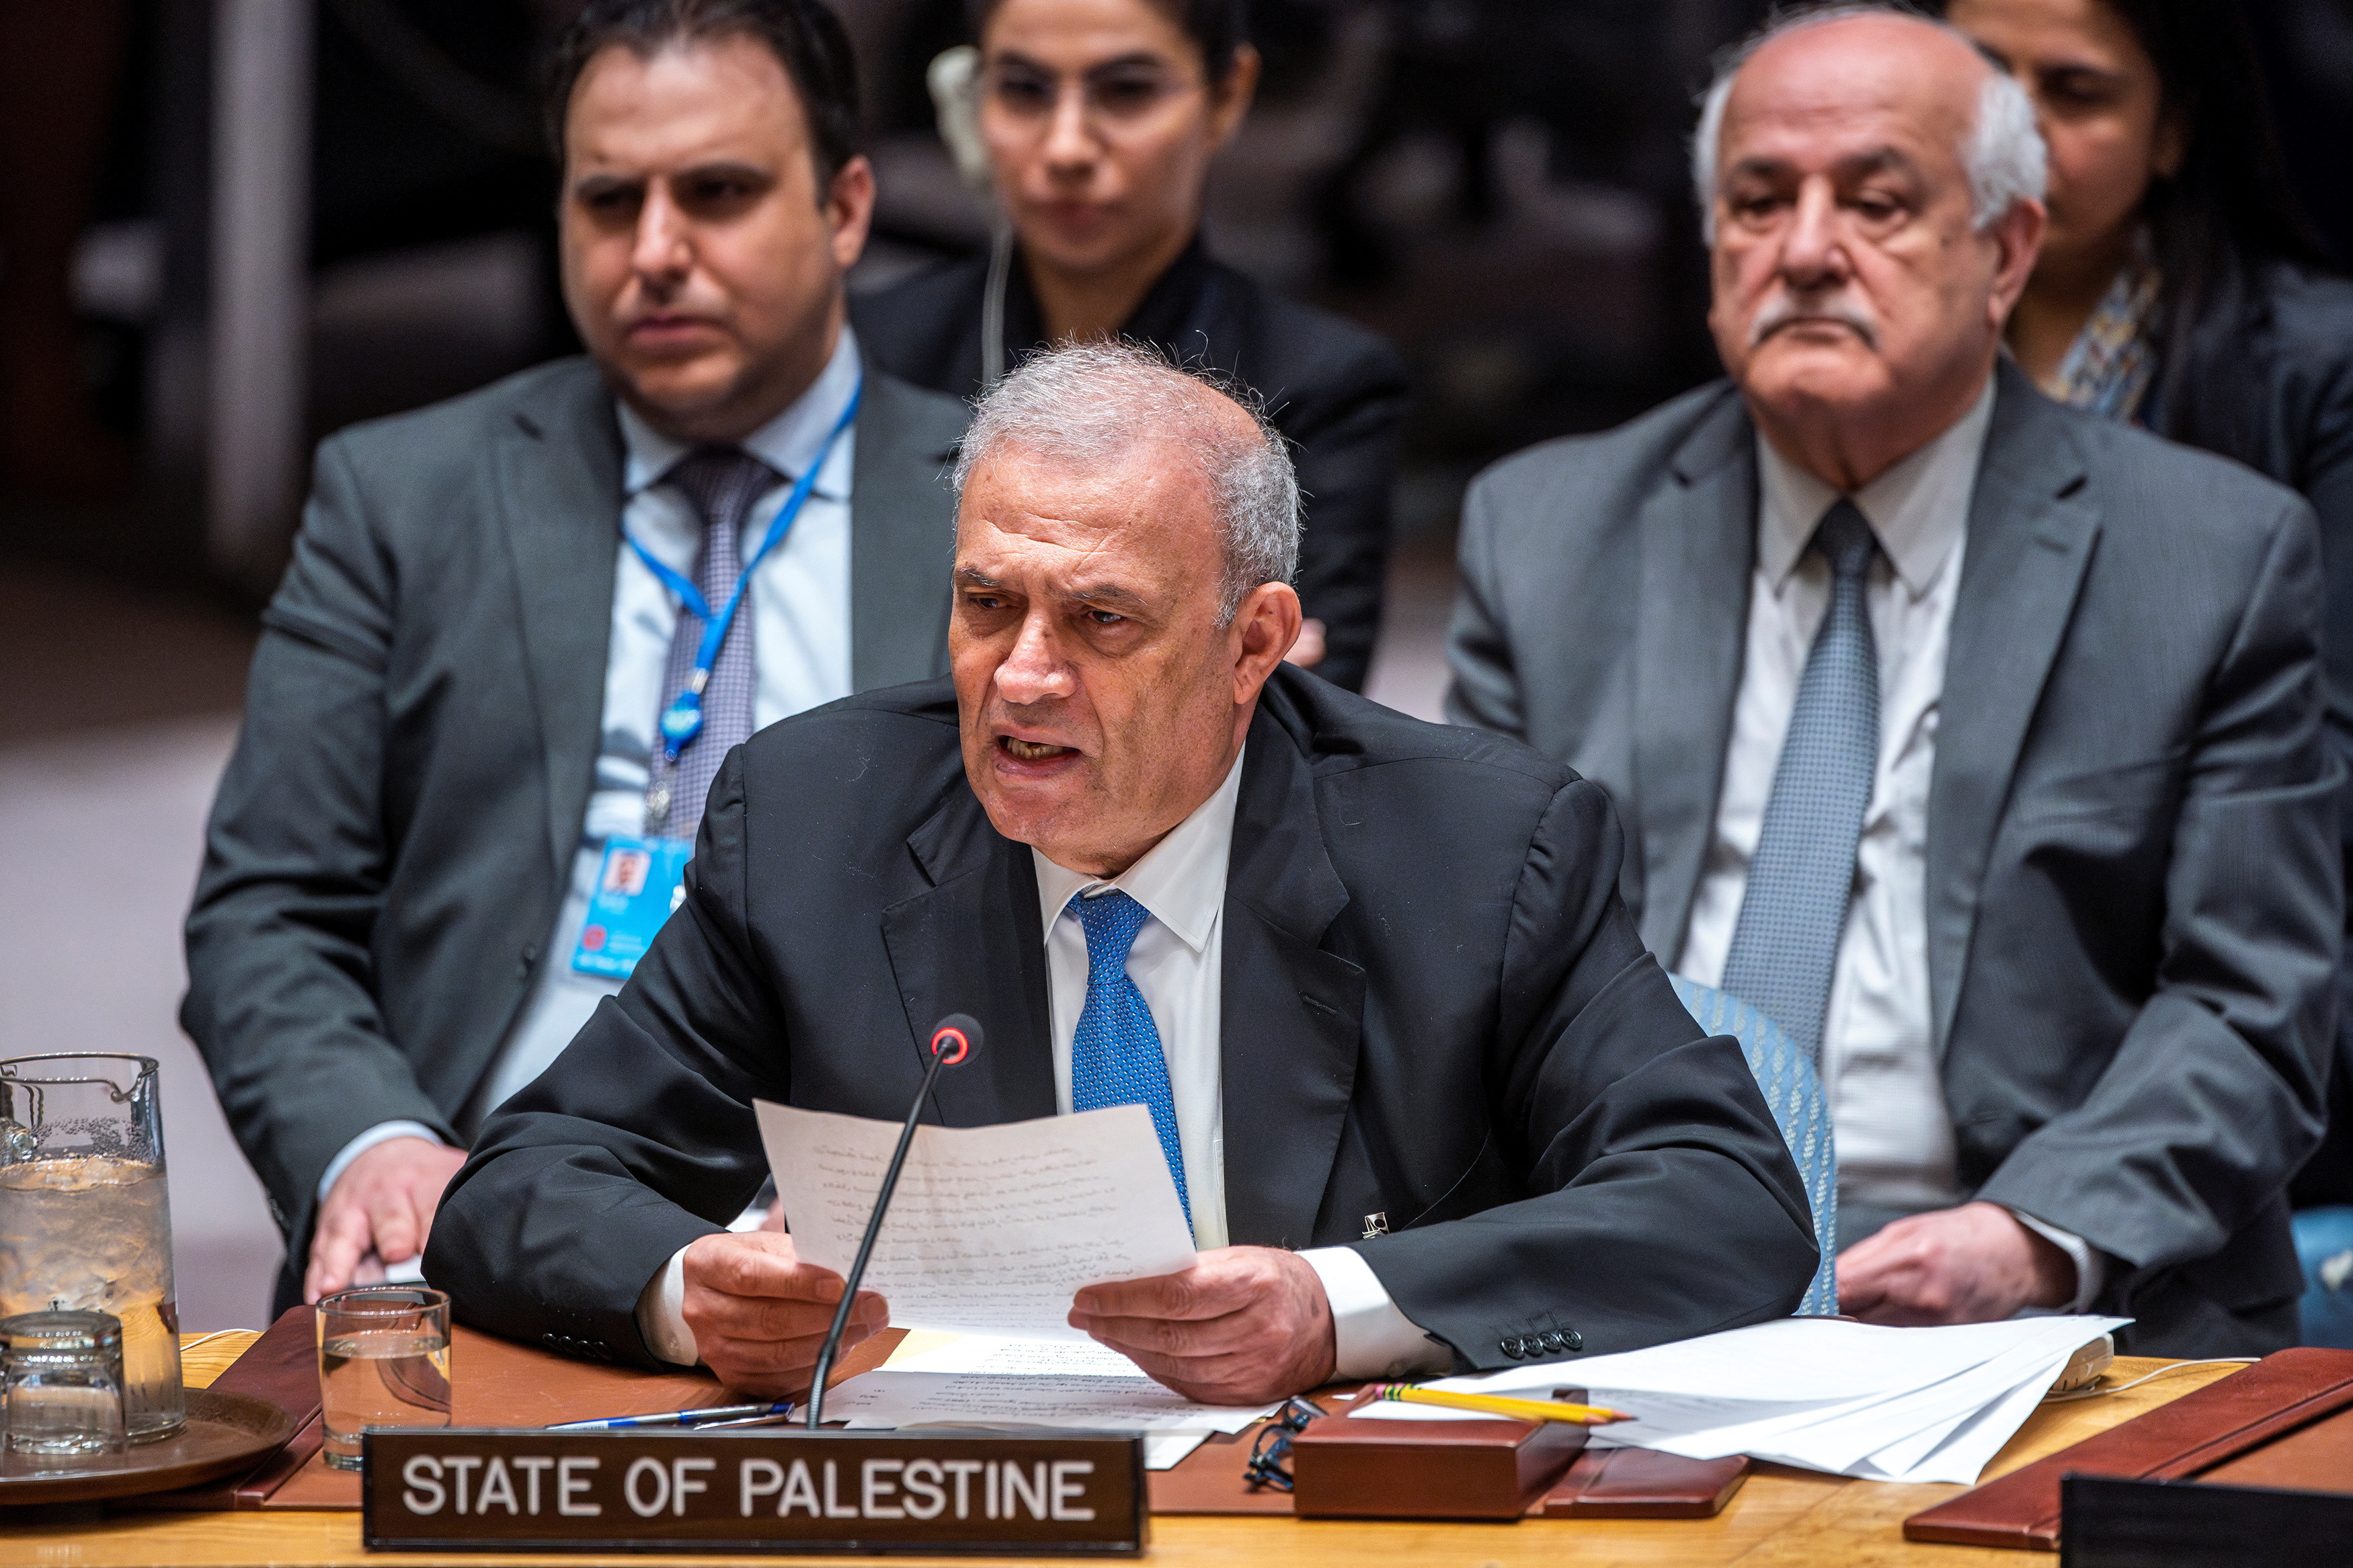 Το Συμβούλιο Ασφαλείας του ΟΗΕ συνεδριάζει για να αντιμετωπίσει την κατάσταση στη Μέση Ανατολή σε υπουργικό επίπεδο, στη Νέα Υόρκη